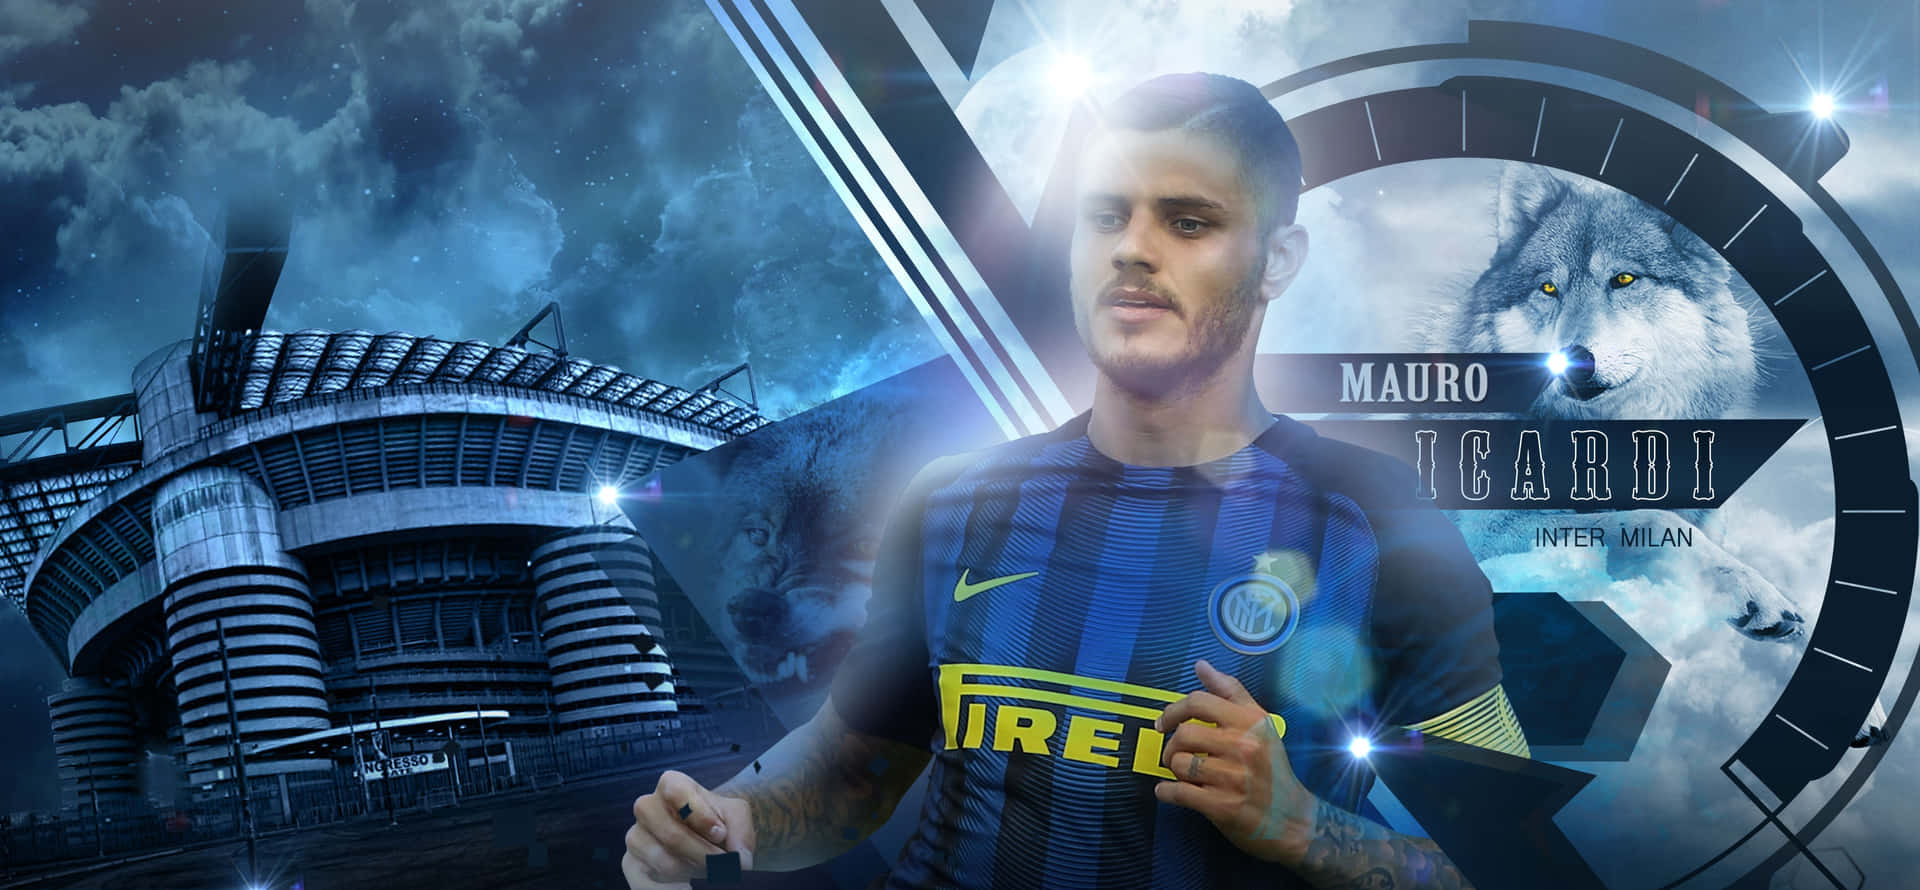 Mauro Icardi Inter Milan Football Striker Wallpaper